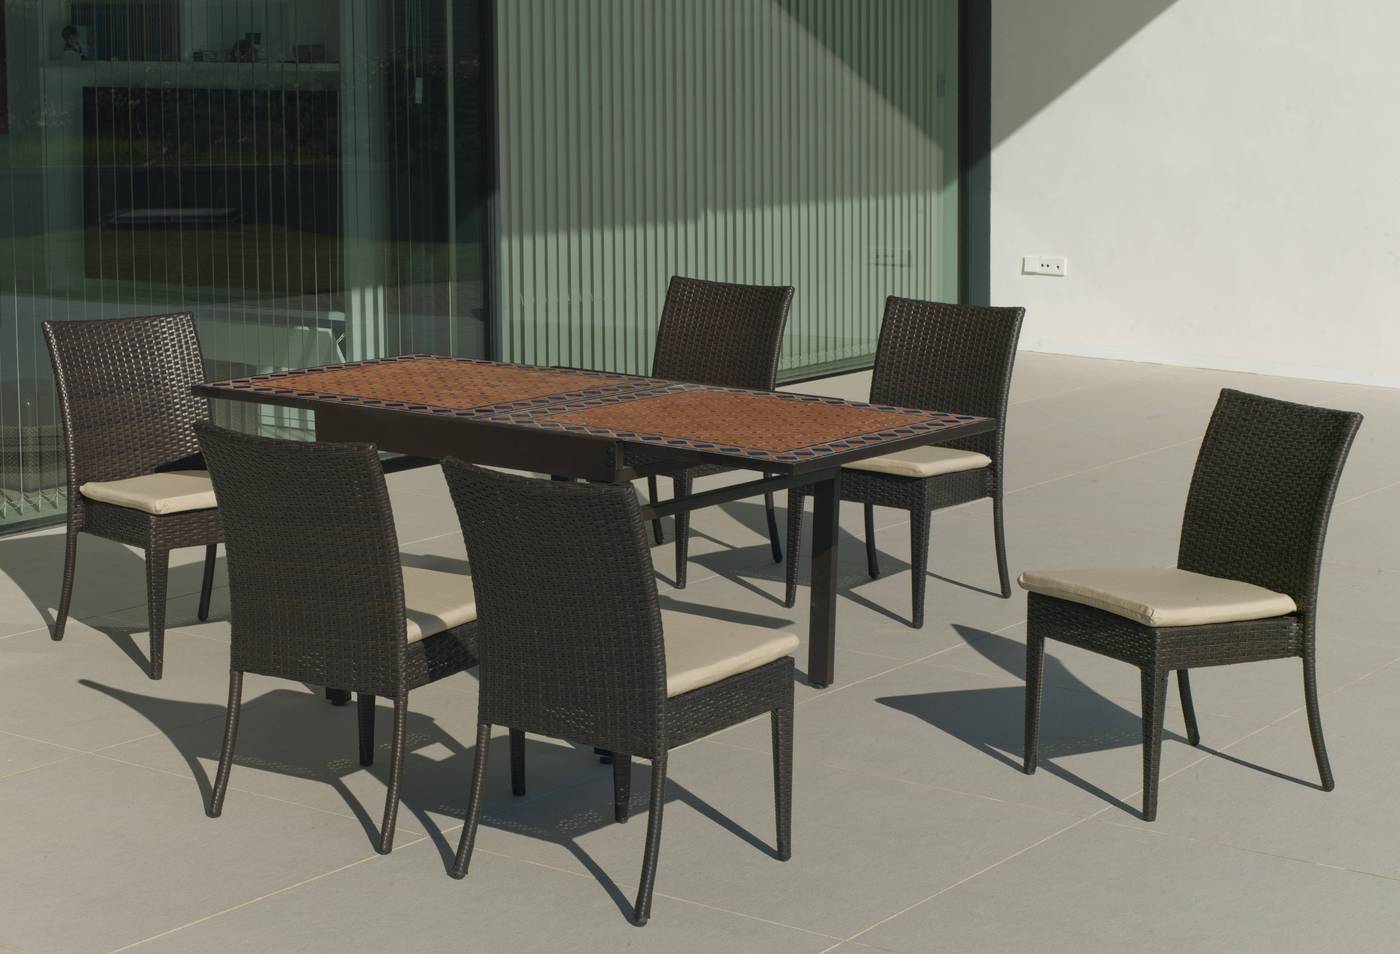 Conjunto mosaico para jardín: mesa extensible de acero forjado con tablero mosaico + 6 sillas de ratán sintético con cojines